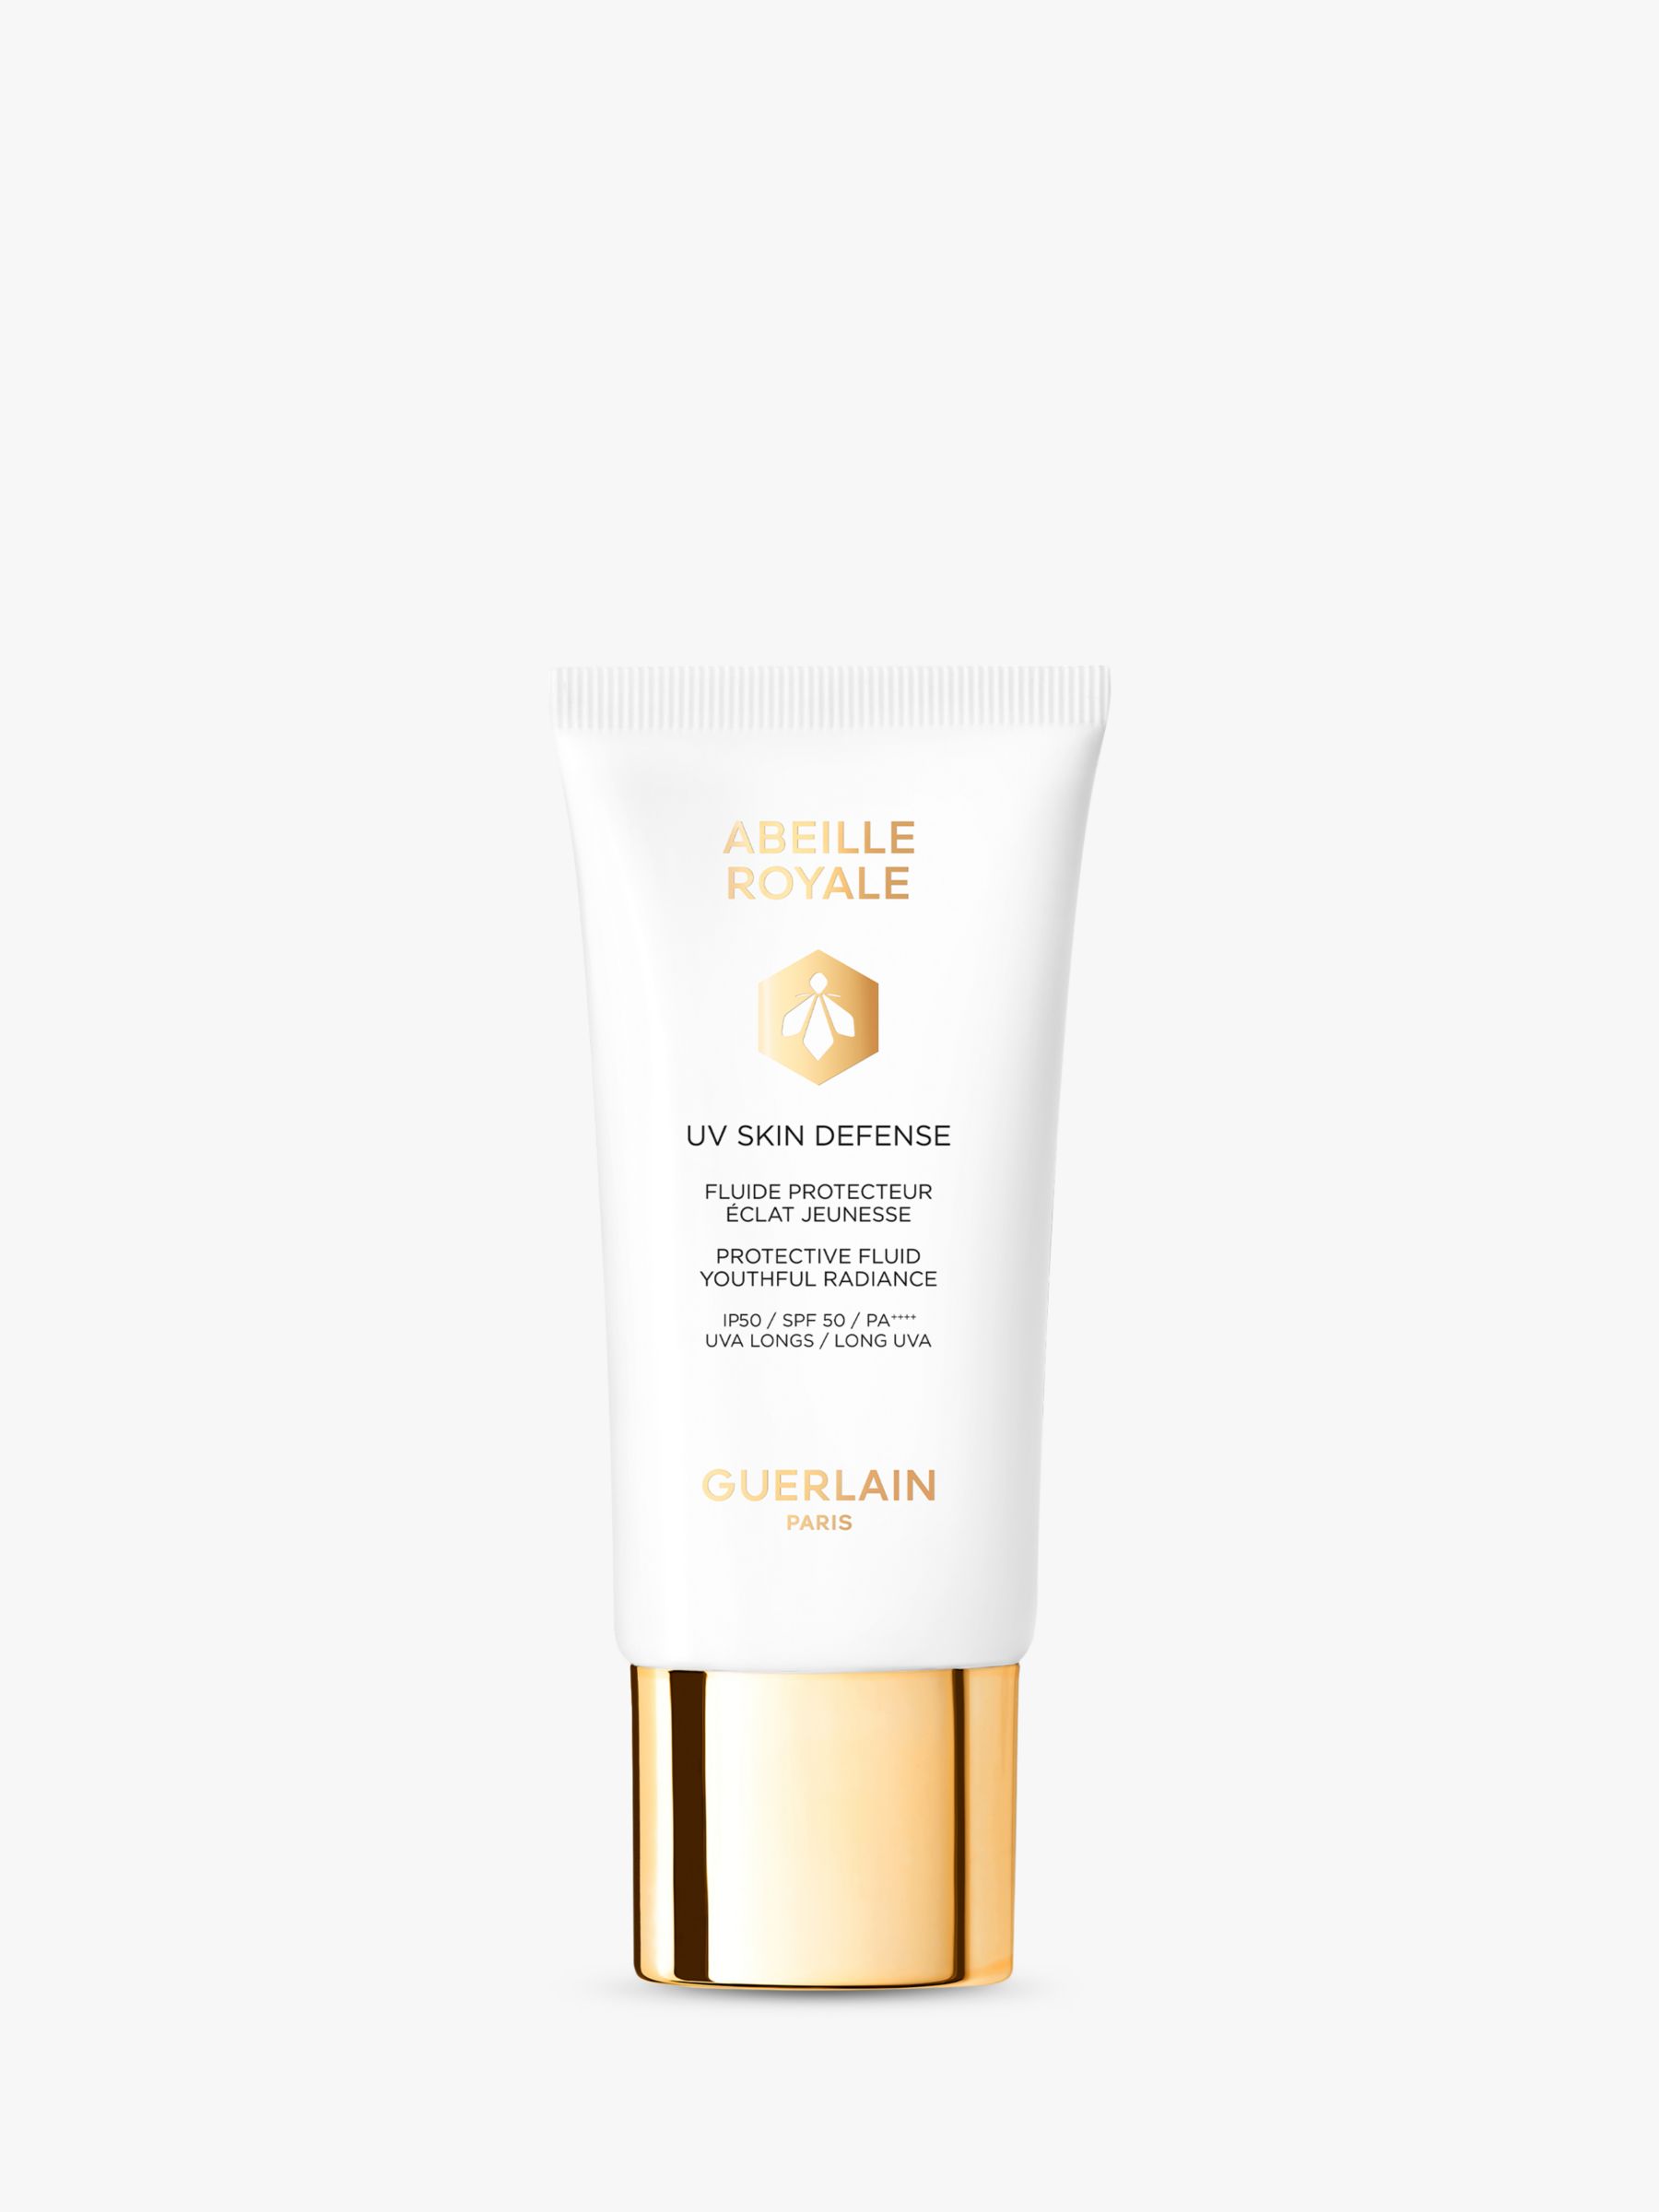 Guerlain Abeille Royale UV Skin Defense SPF 50, 50ml 1